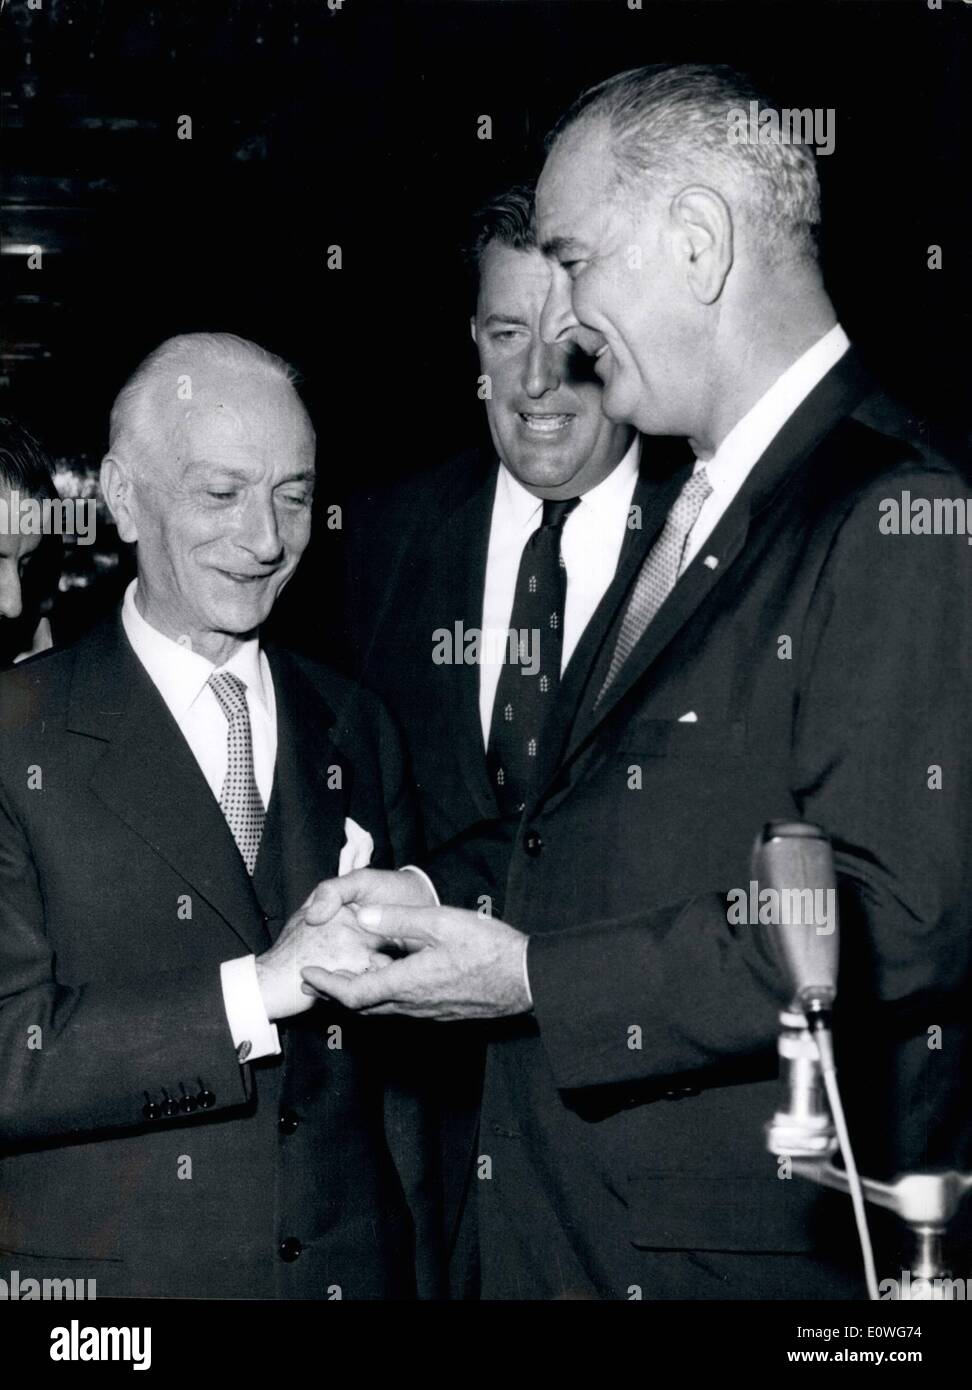 Septembre 09, 1962 - La visite du vice-président Lyndon Johnson. Le Président de la République Itlaia député. Antonio Segni a reçu aujourd'hui au Palais du Quirinal, M. Lyndon Johnson, Vice-président des Etats-Unis, en visite officielle à Rome. Banque D'Images